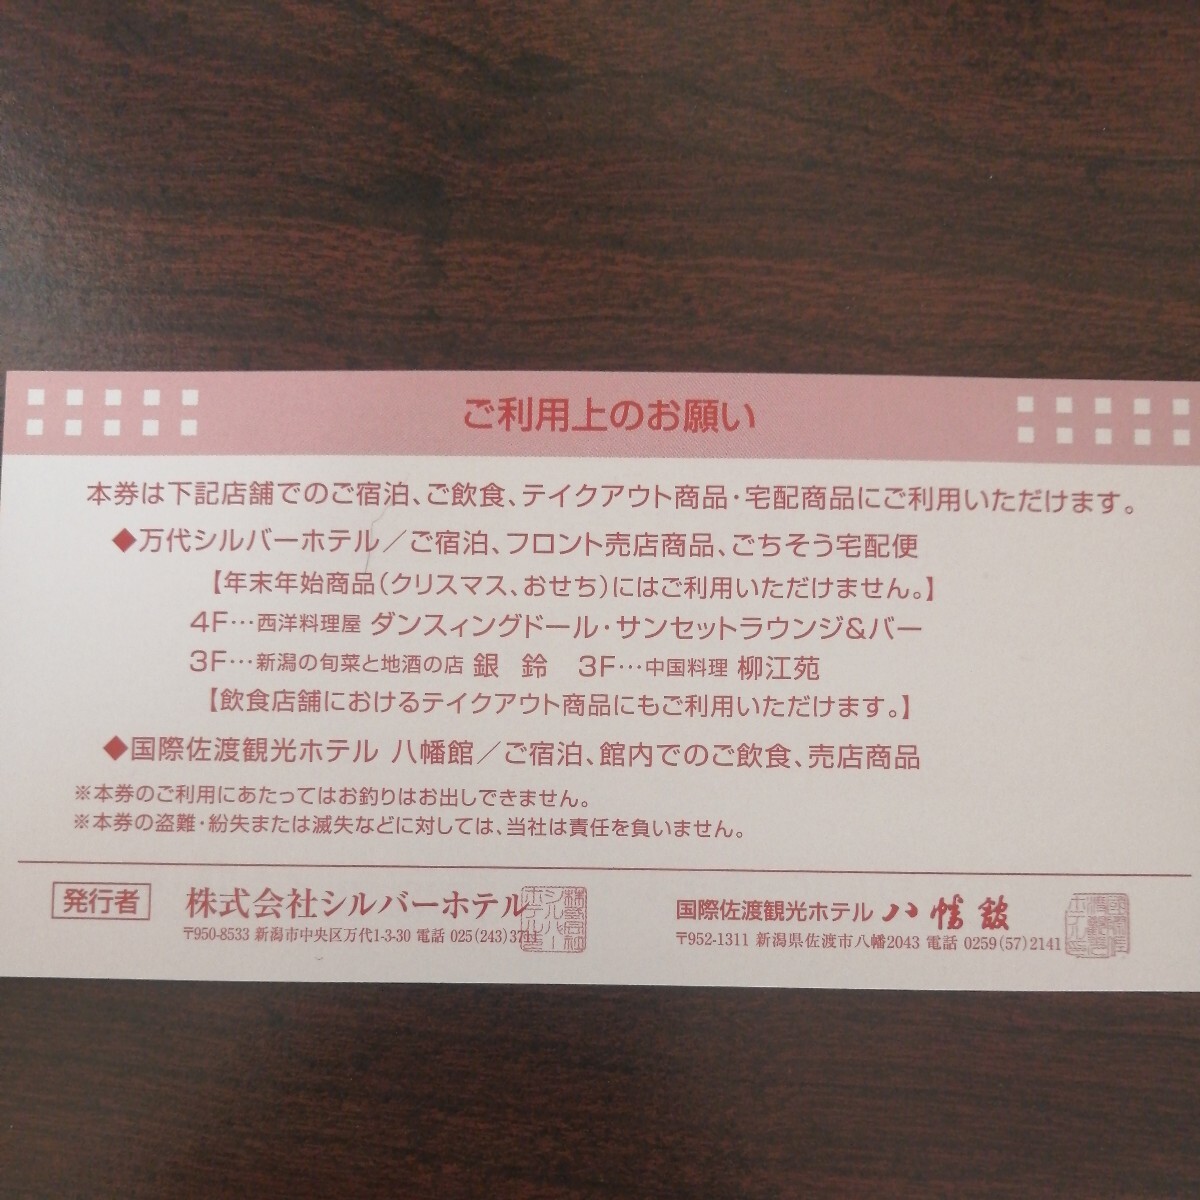  Niigata транспорт акционерное общество акционер пригласительный билет 10 листов 1 комплект 